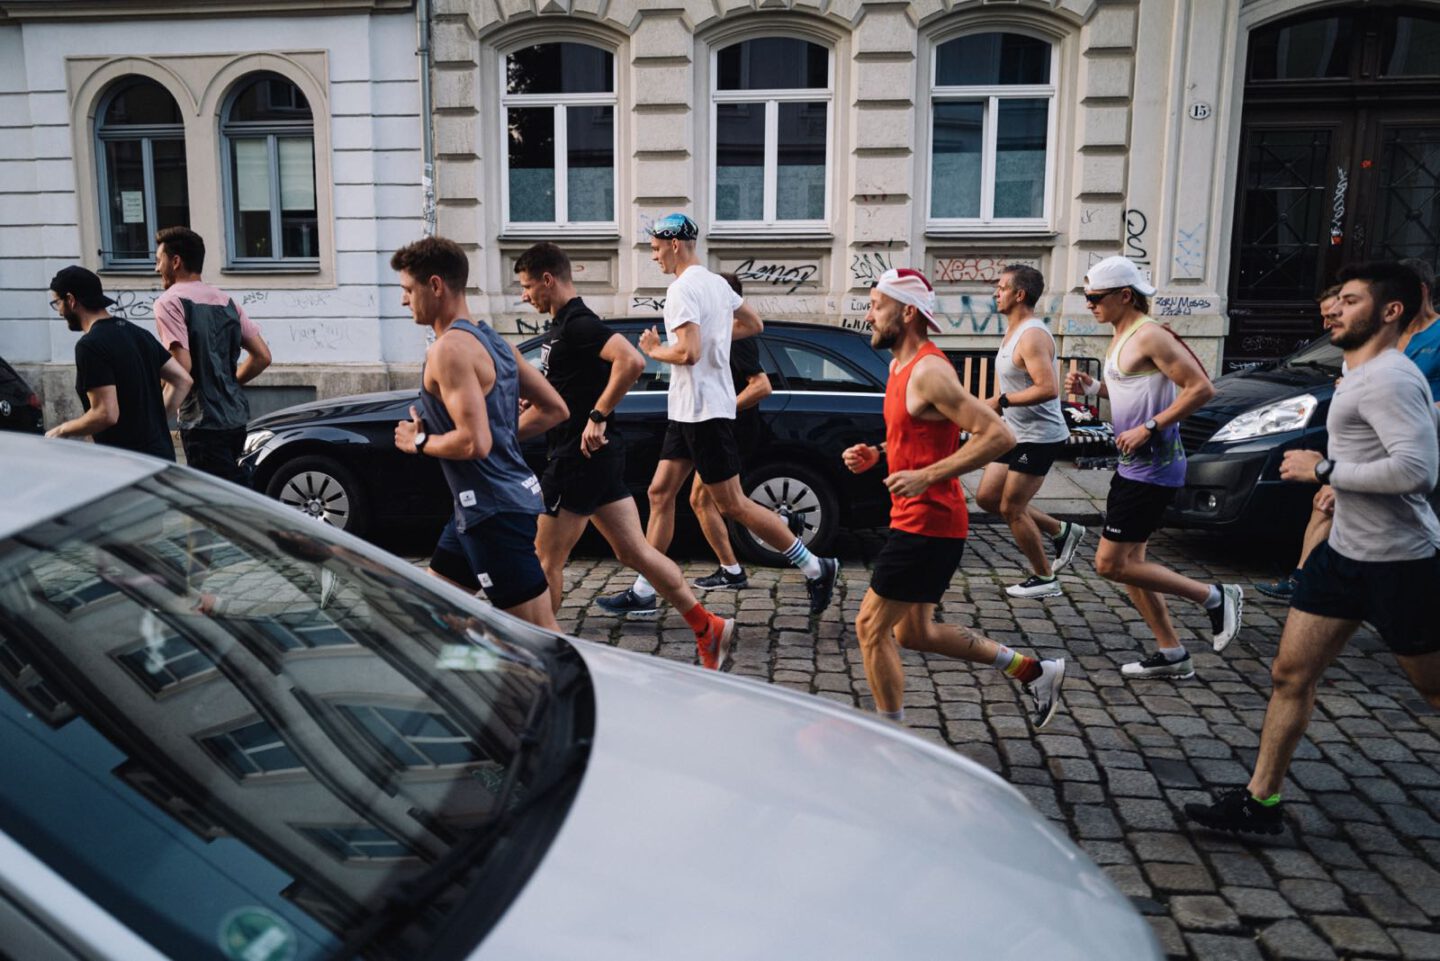 Mehrere Menschen joggen über eine Straße in einer Großstadt